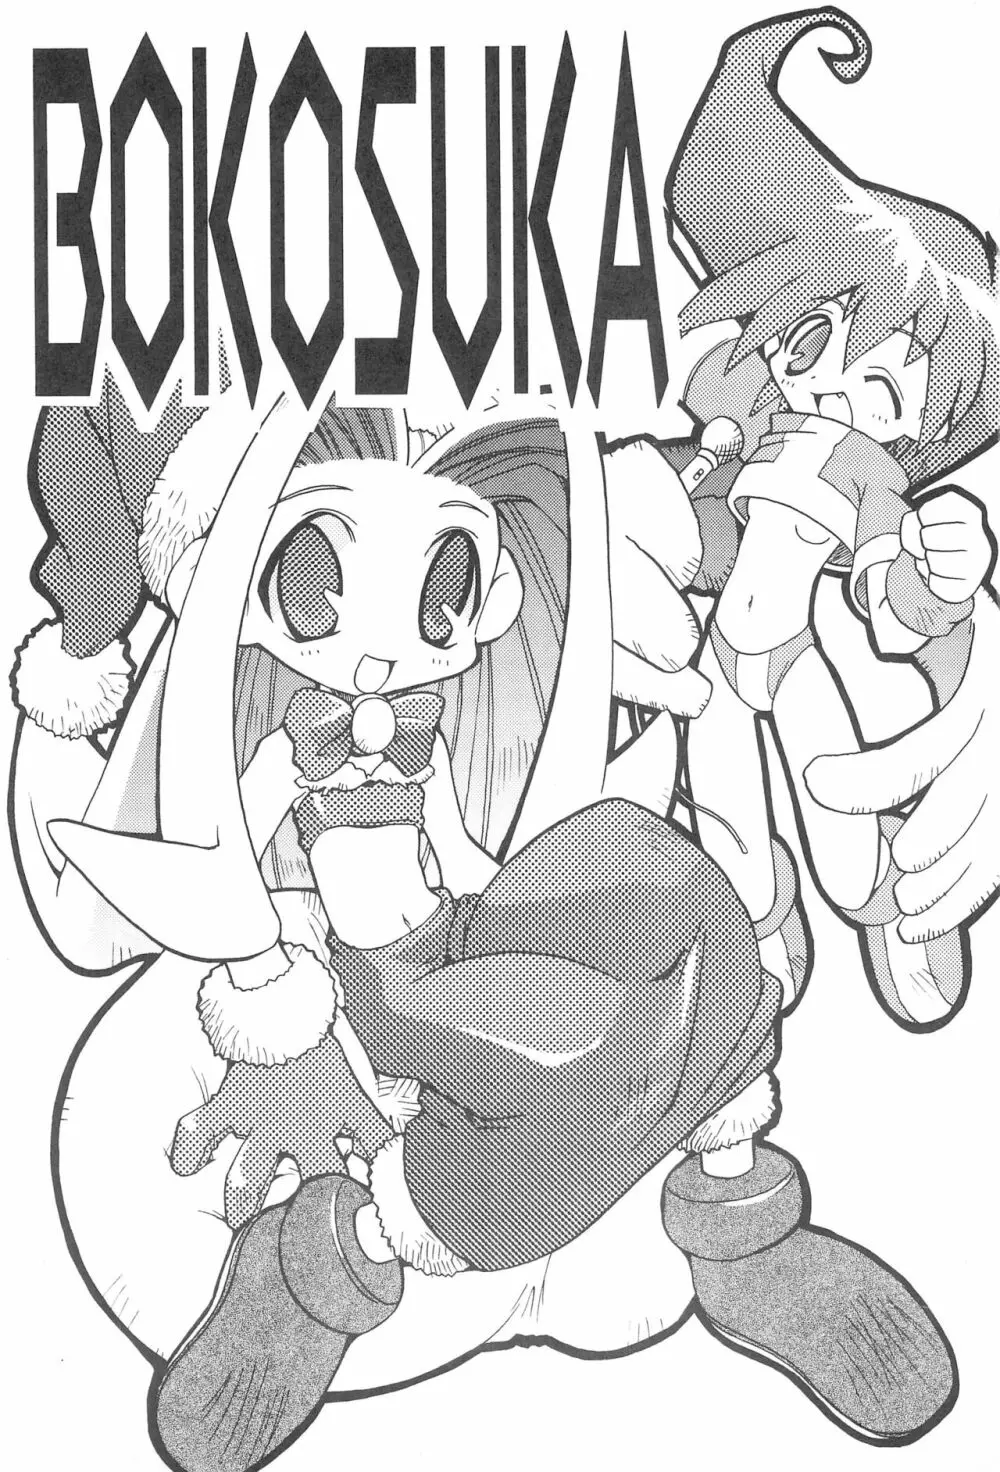 BOKOSUKA - page3